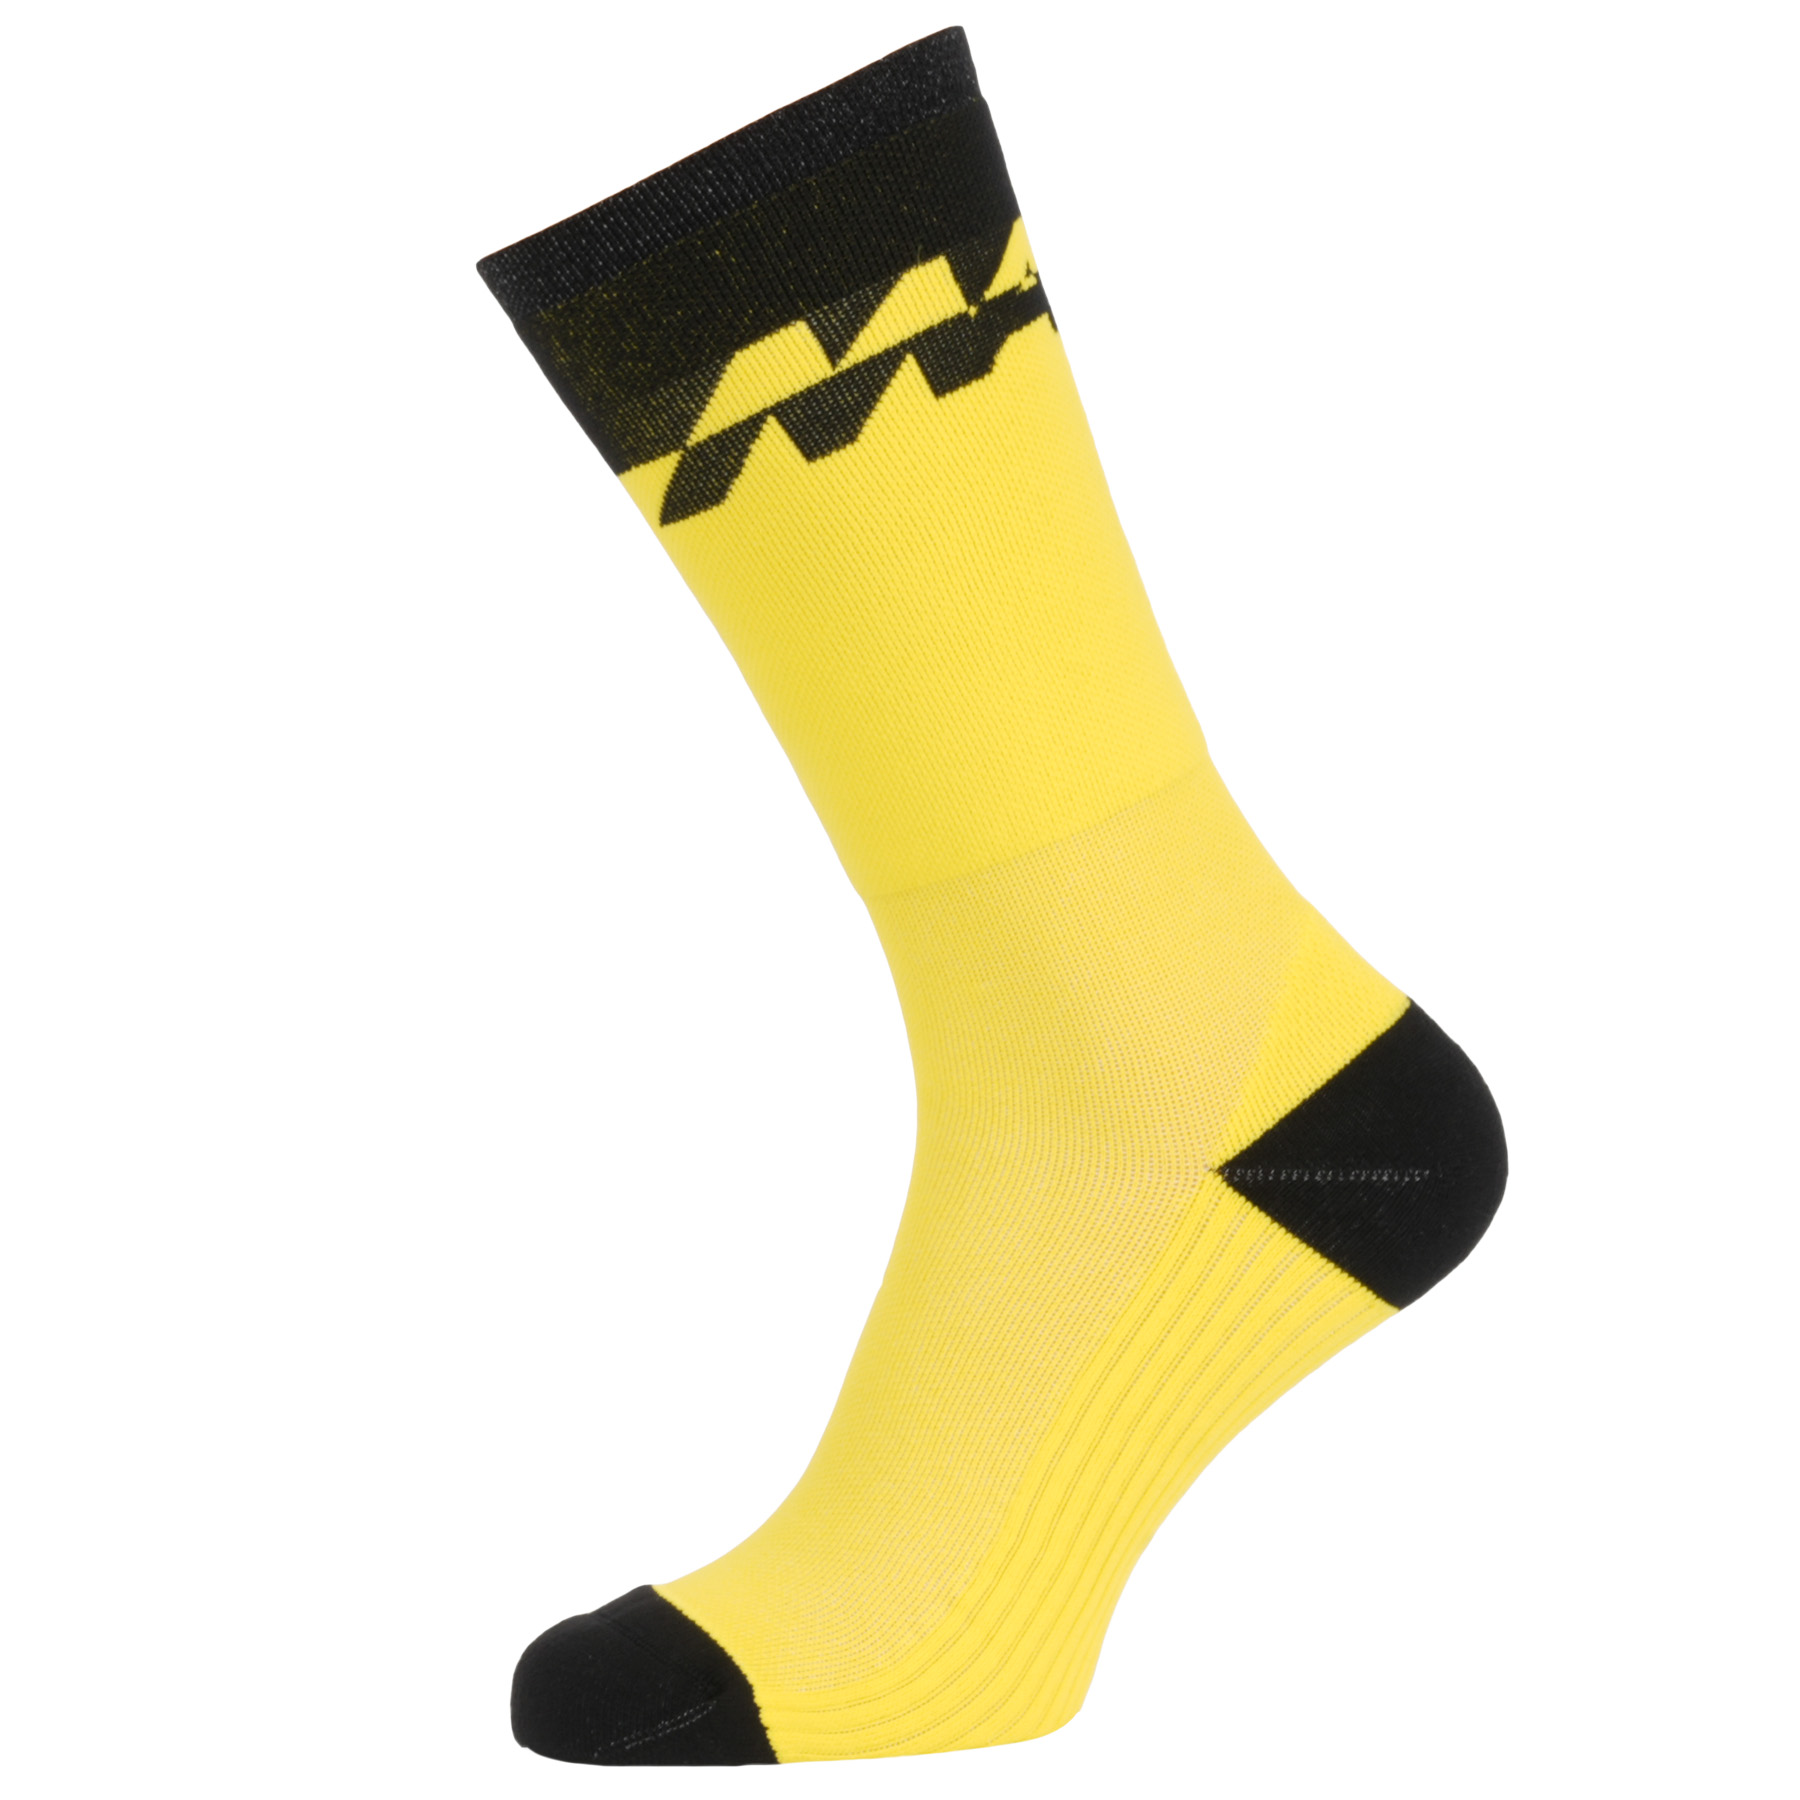 Produktbild von Mavic Deemax MTB Socken - gelb/schwarz